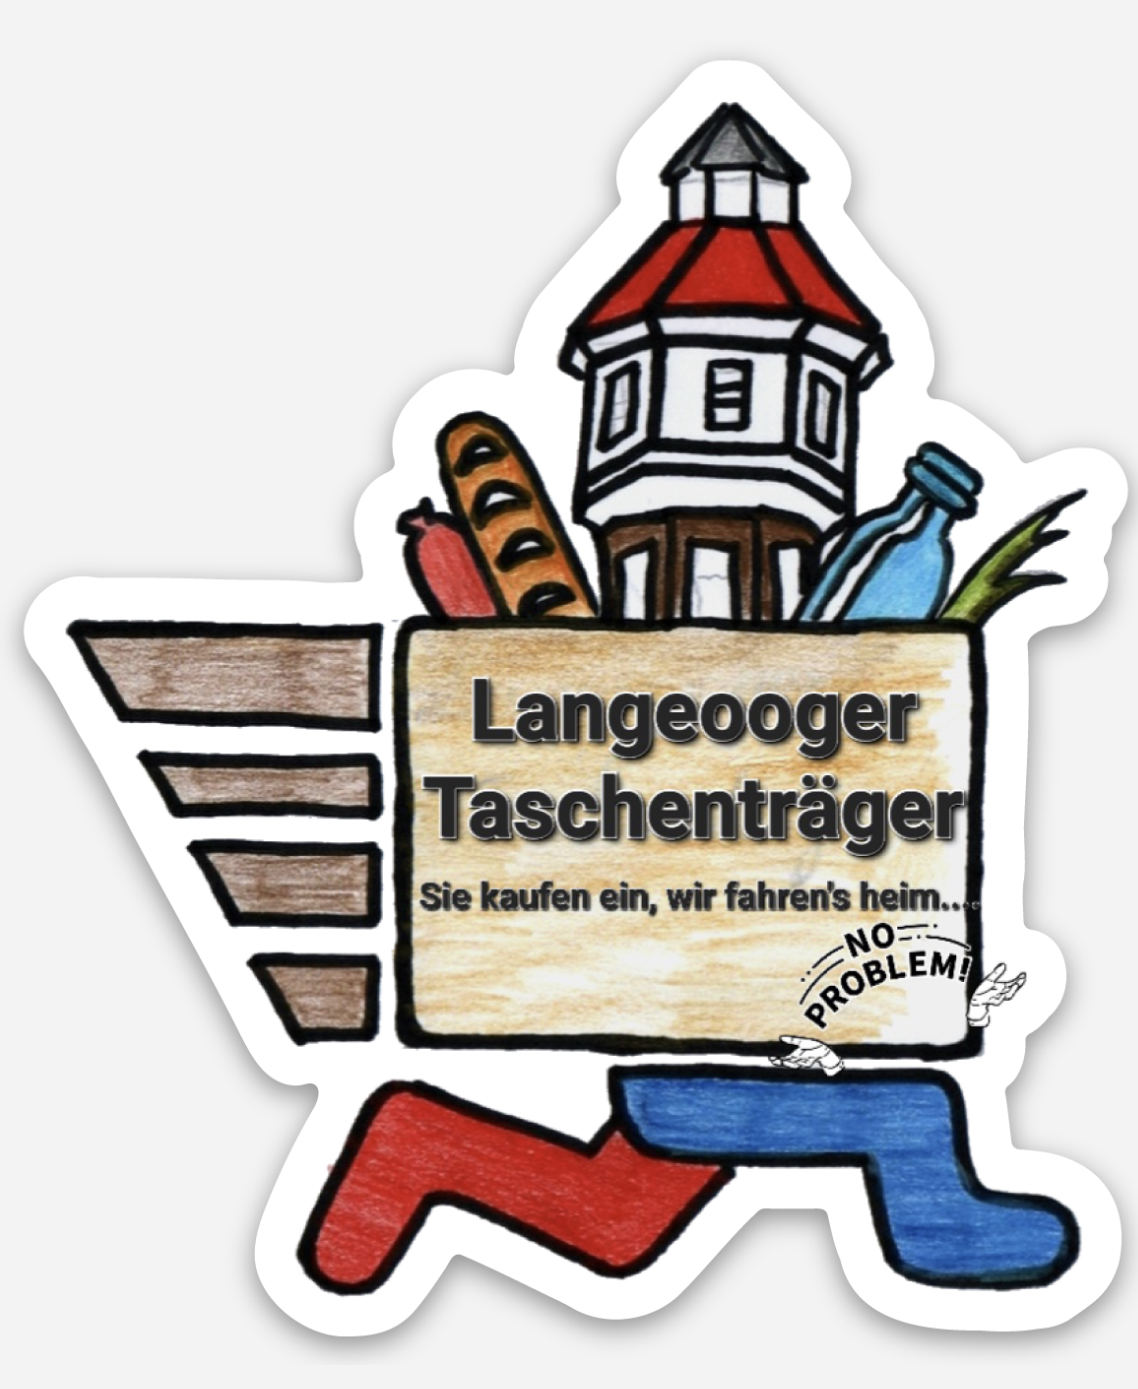 Langeooger_Taschenträger-1